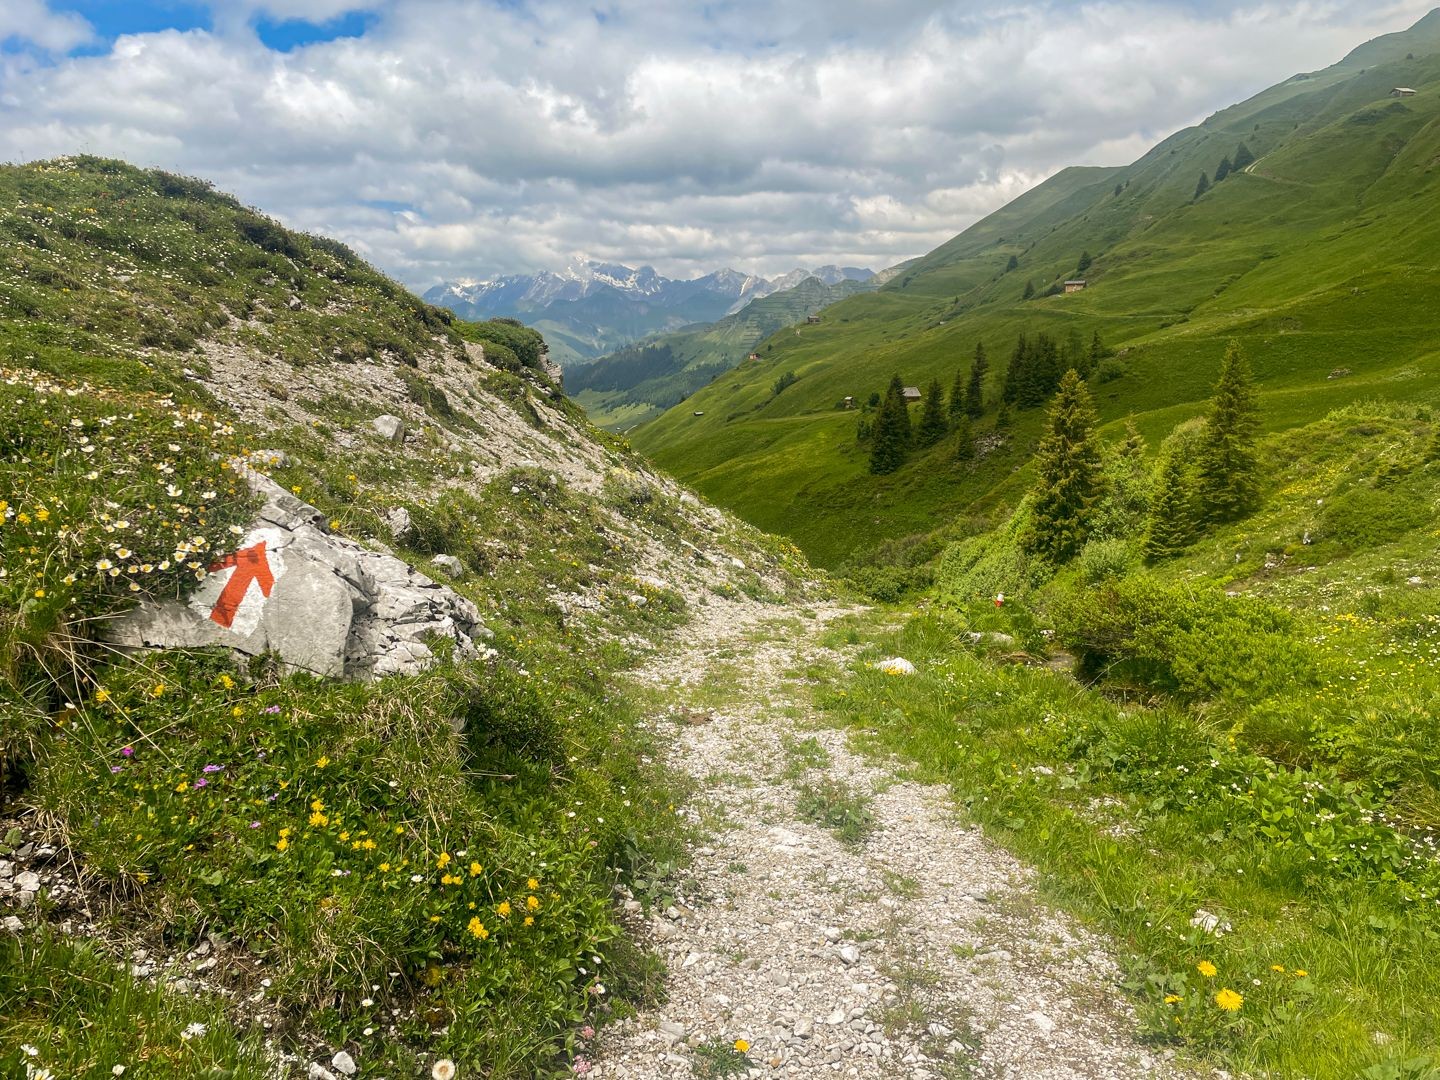 Le chemin descend dans la vallée en longeant le ruisseau Alpbach.